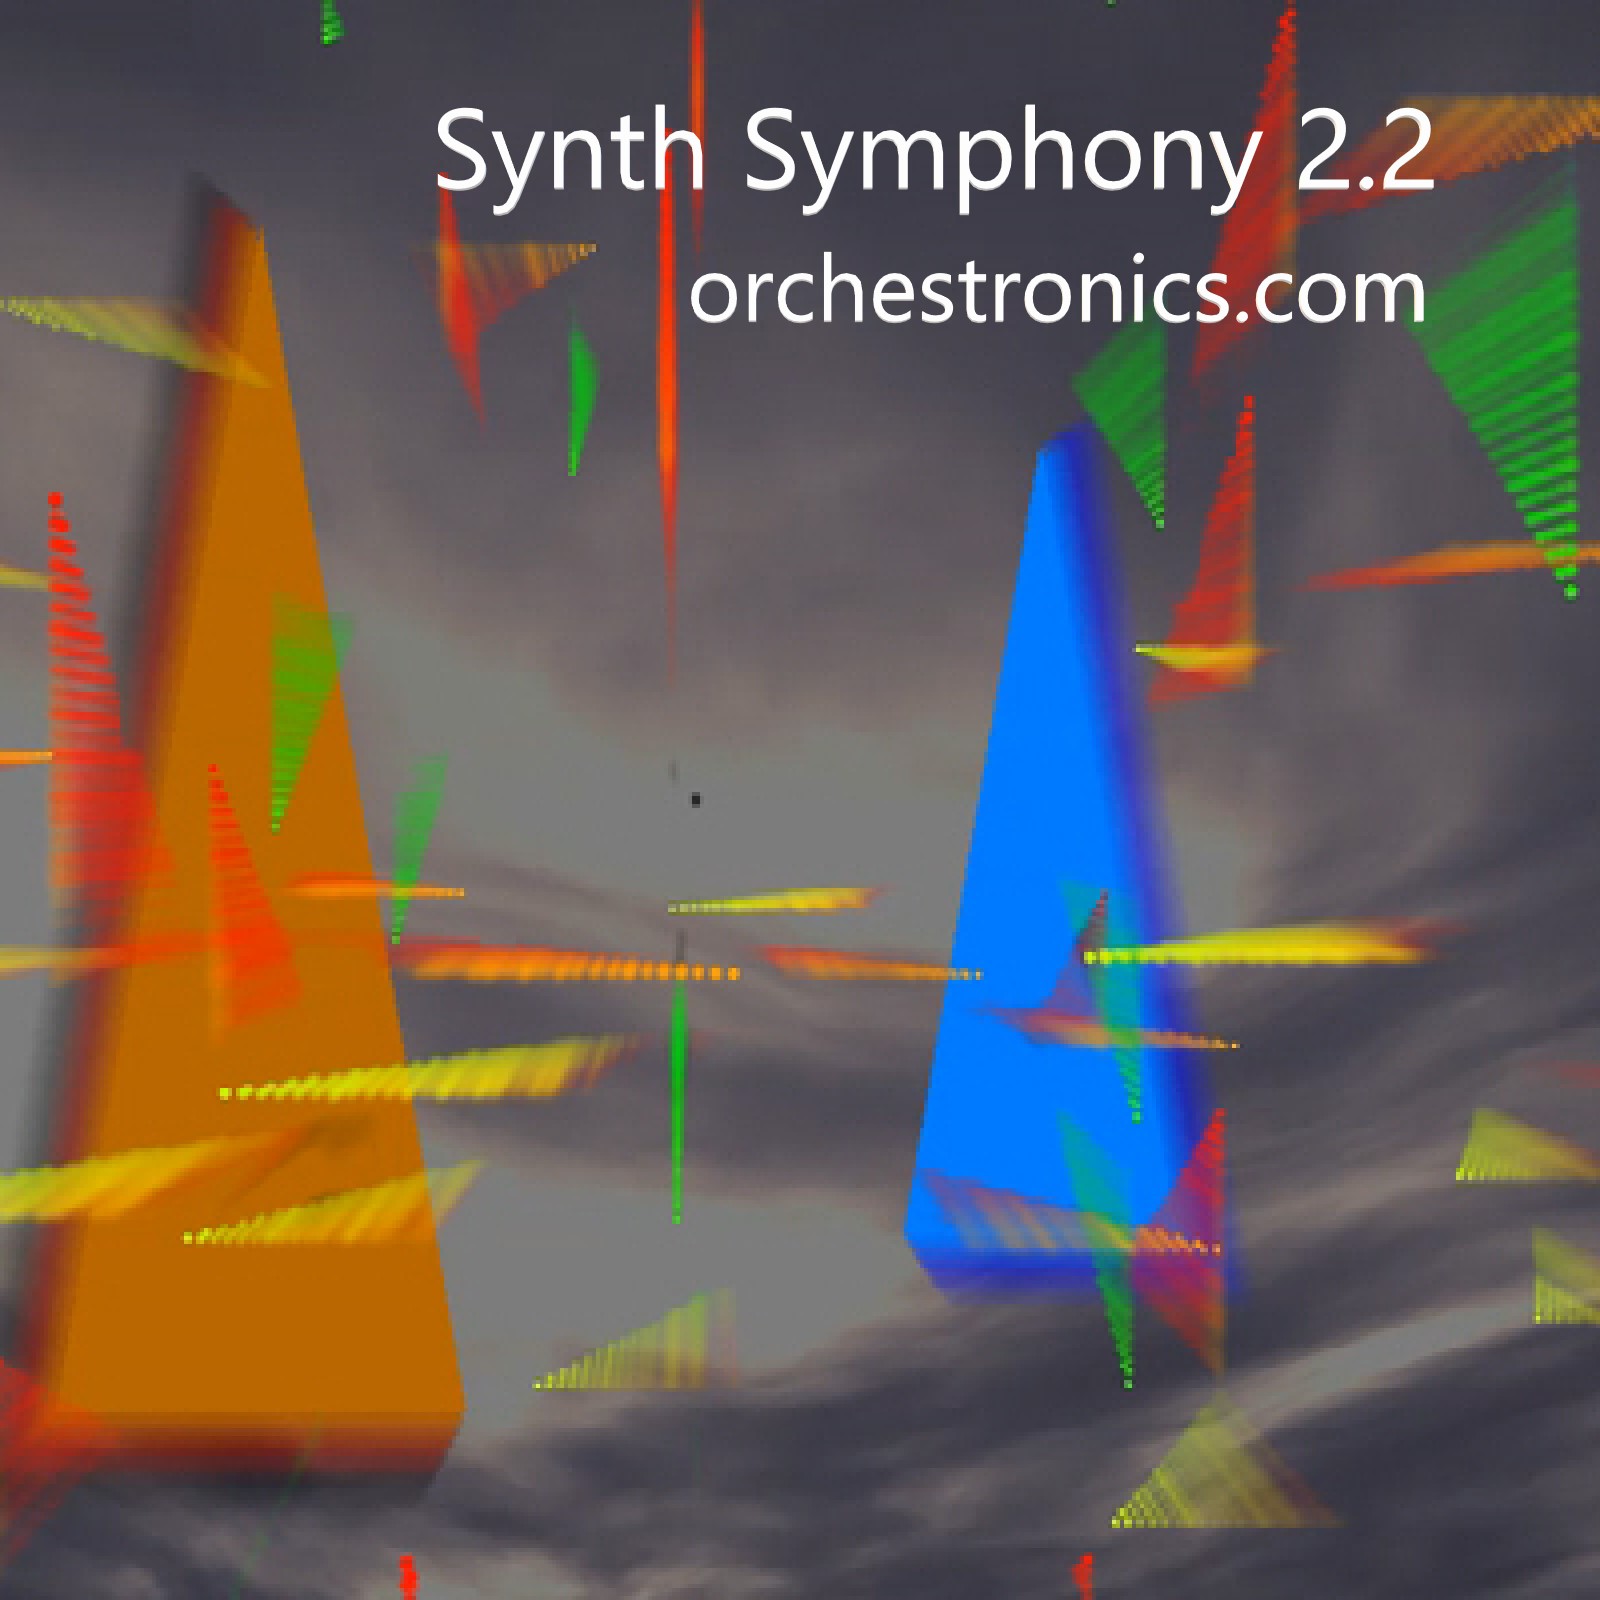 Synth Symphony 2.2